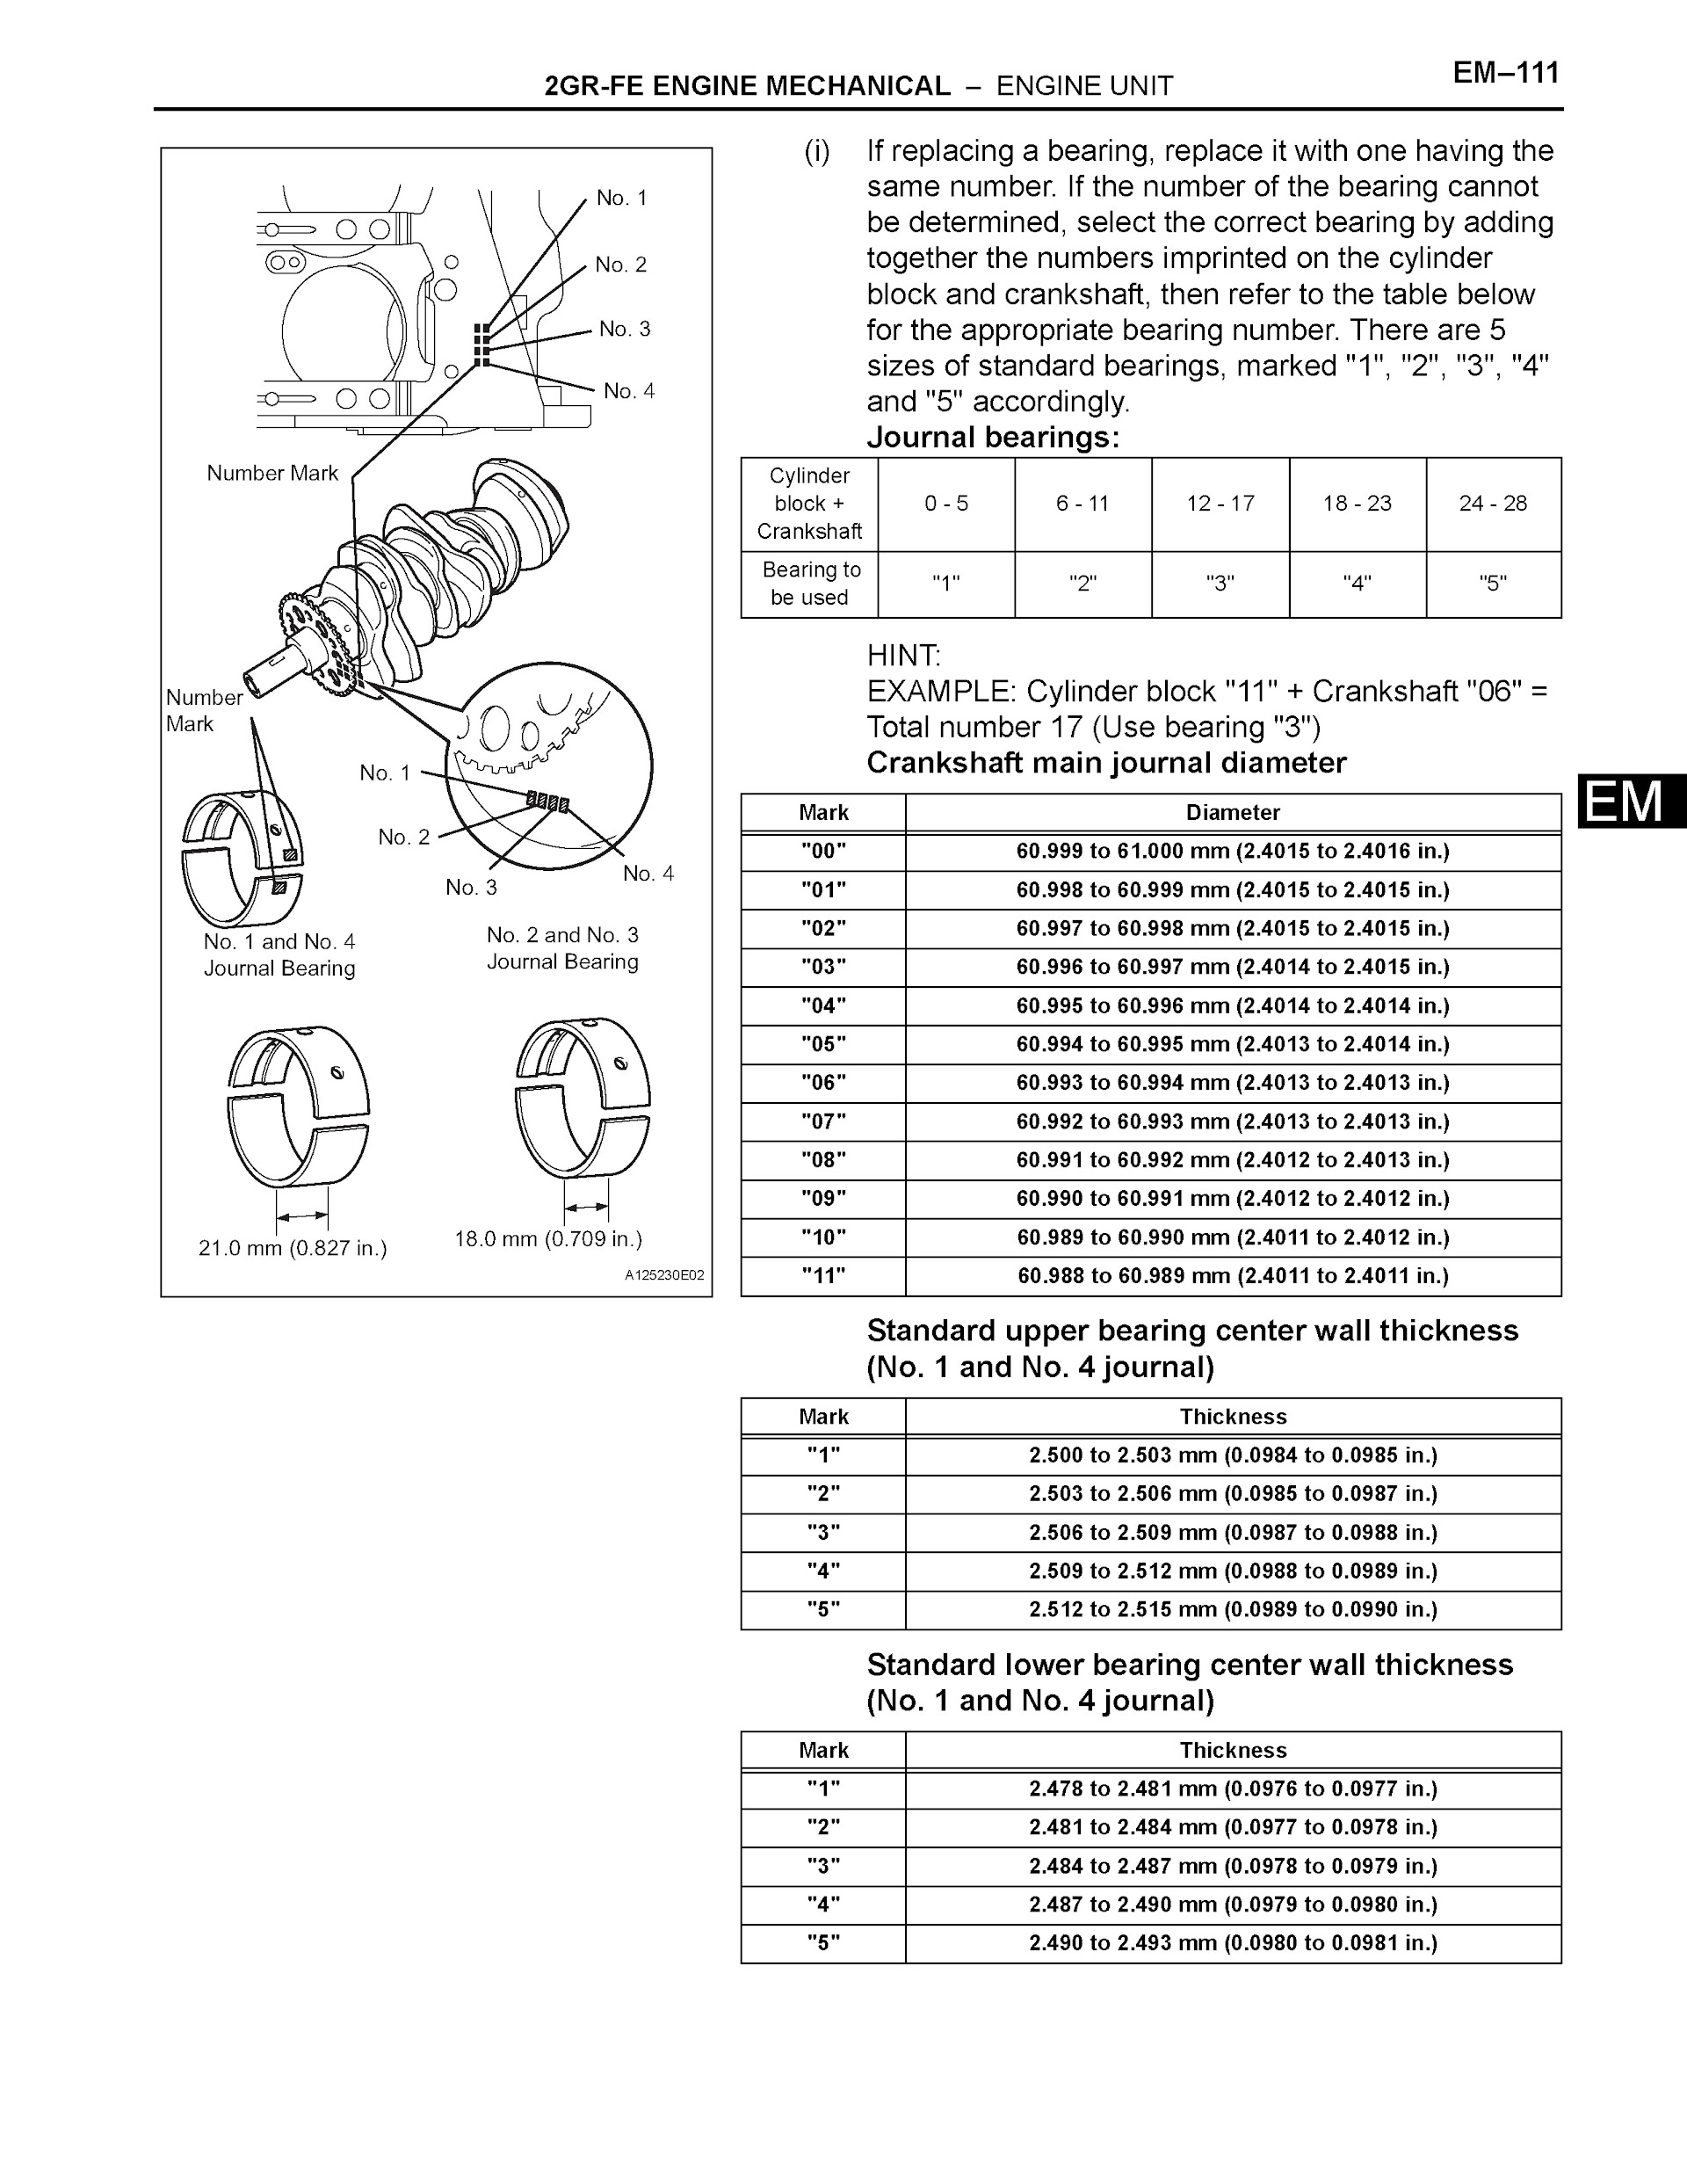 2007-2011 Toyota Camry Repair Manual